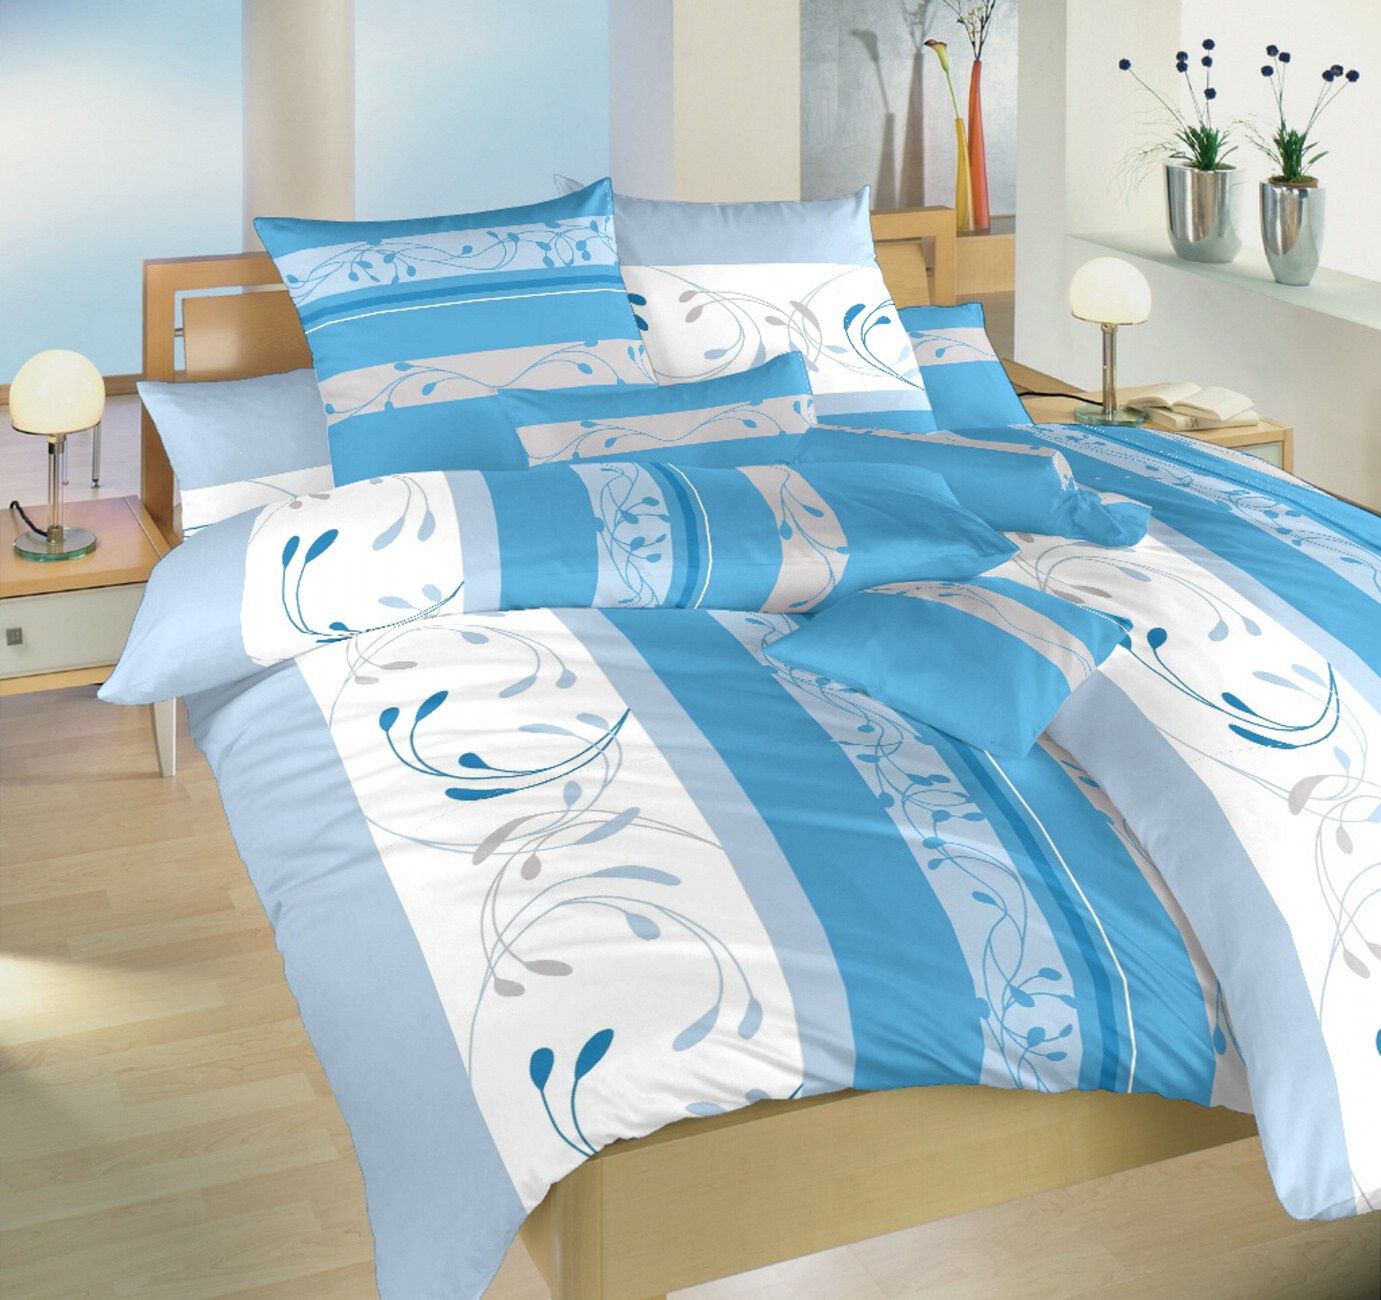 Elegantný krepové posteľné obliečky Sliezsko modrej, Dadka